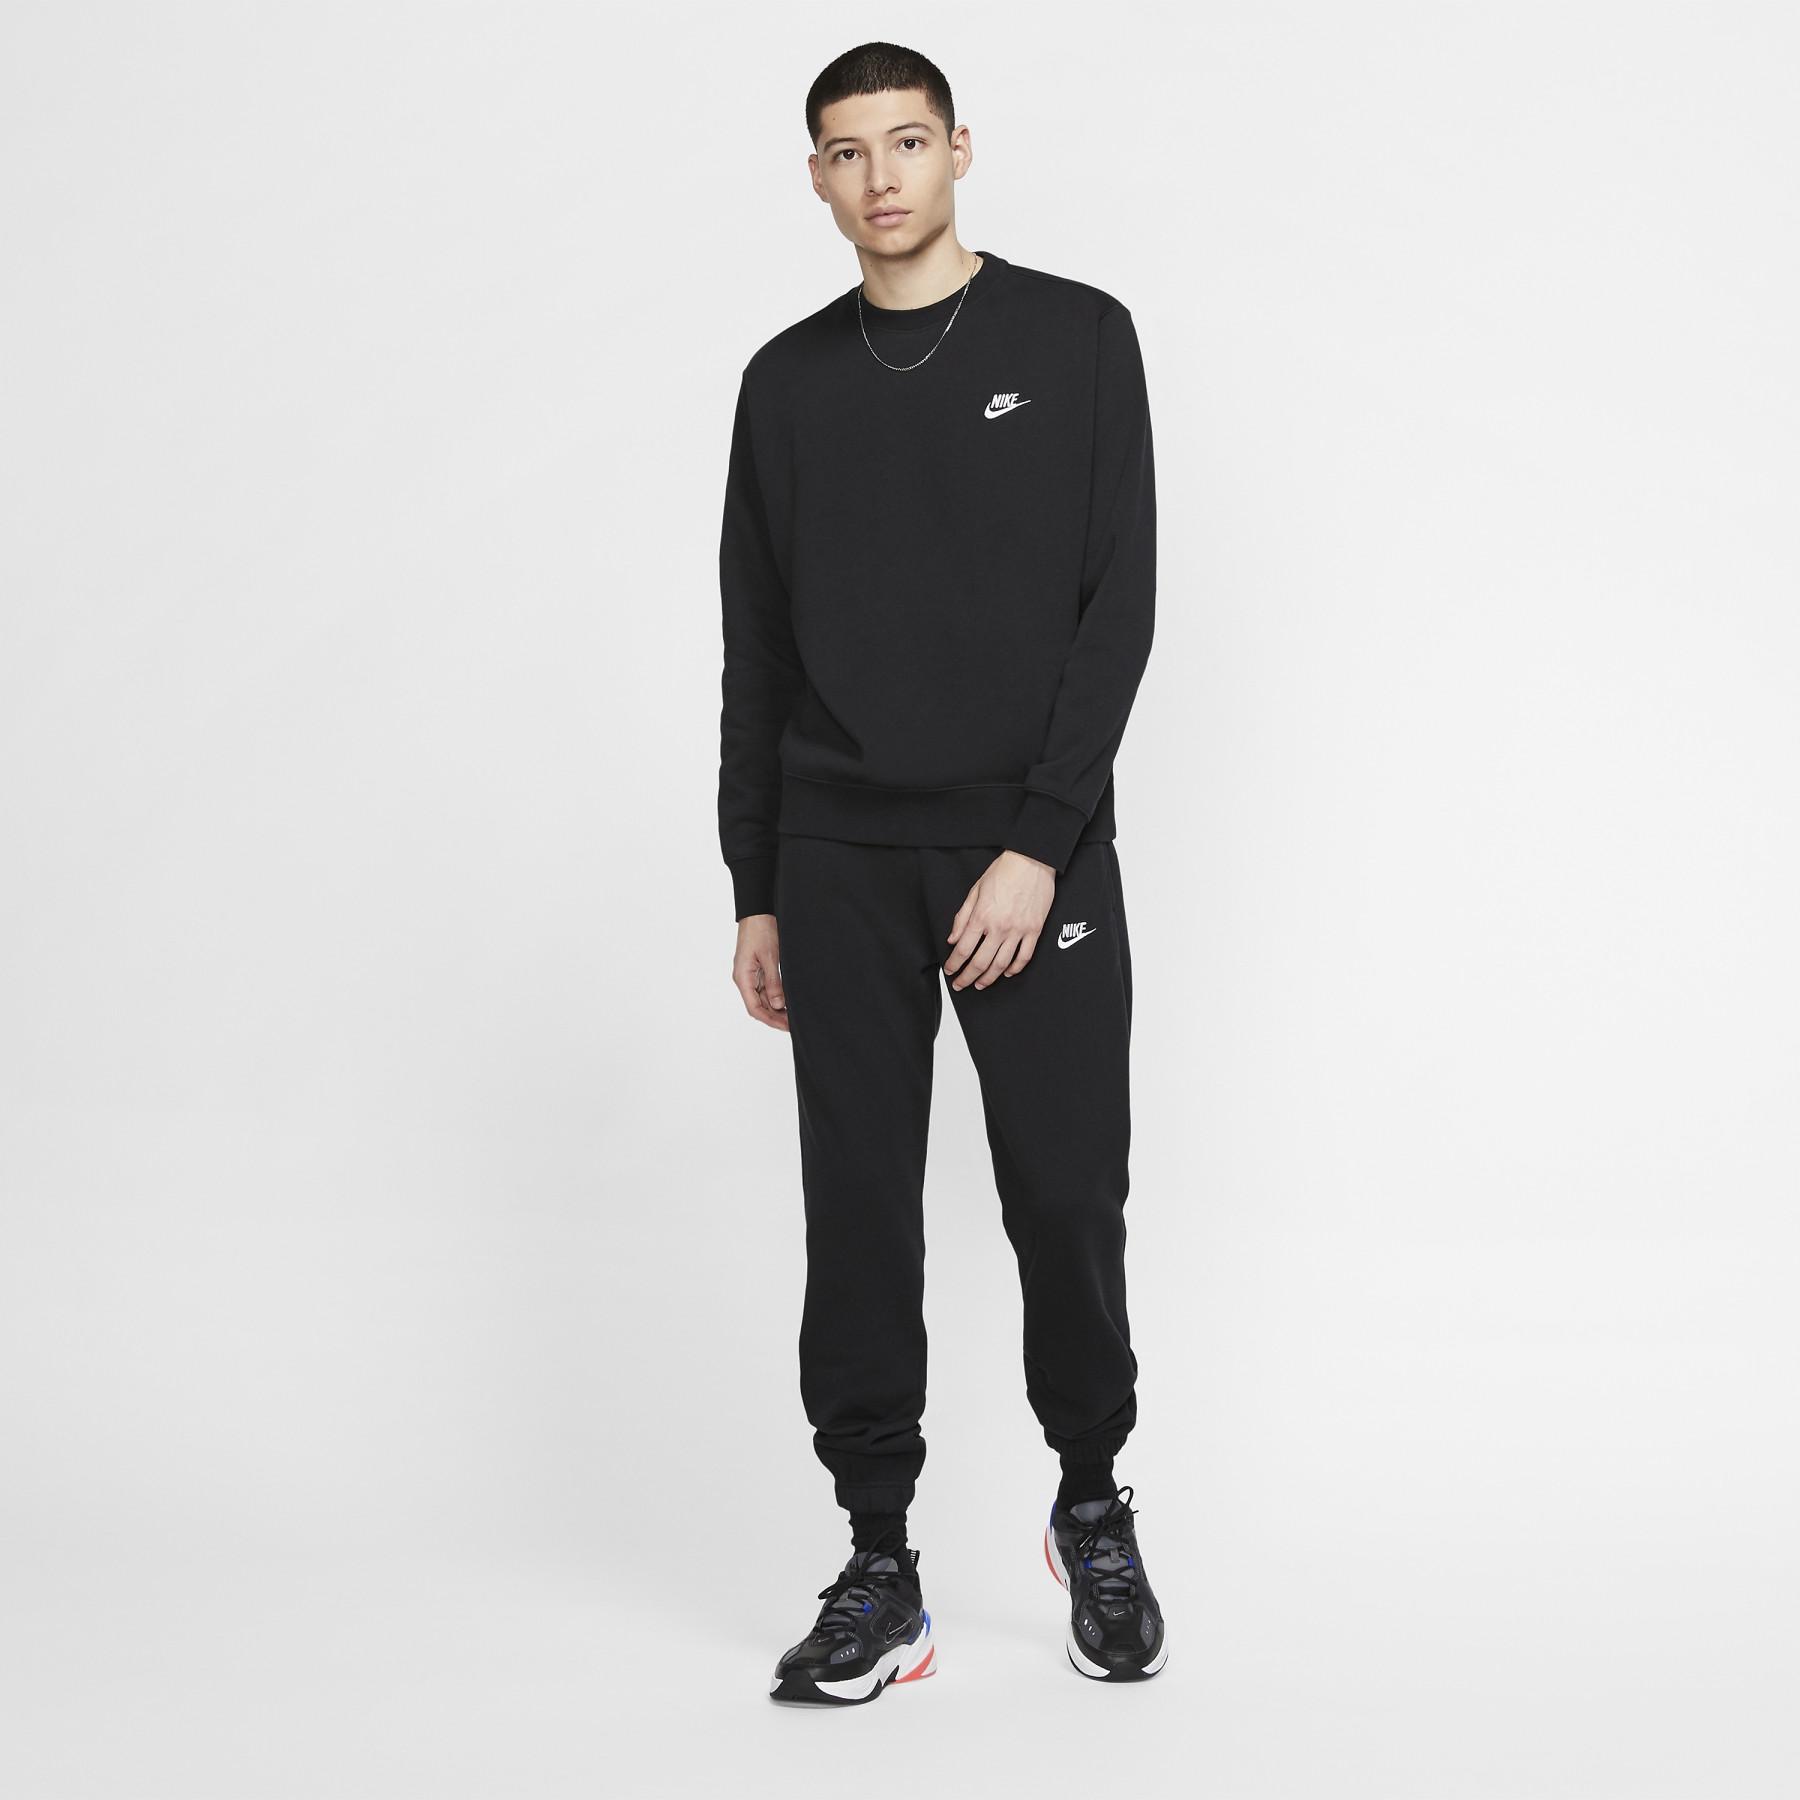 Sweatshirt Nike Sportswear Club Fleece - Nike - Brands - Handball wear